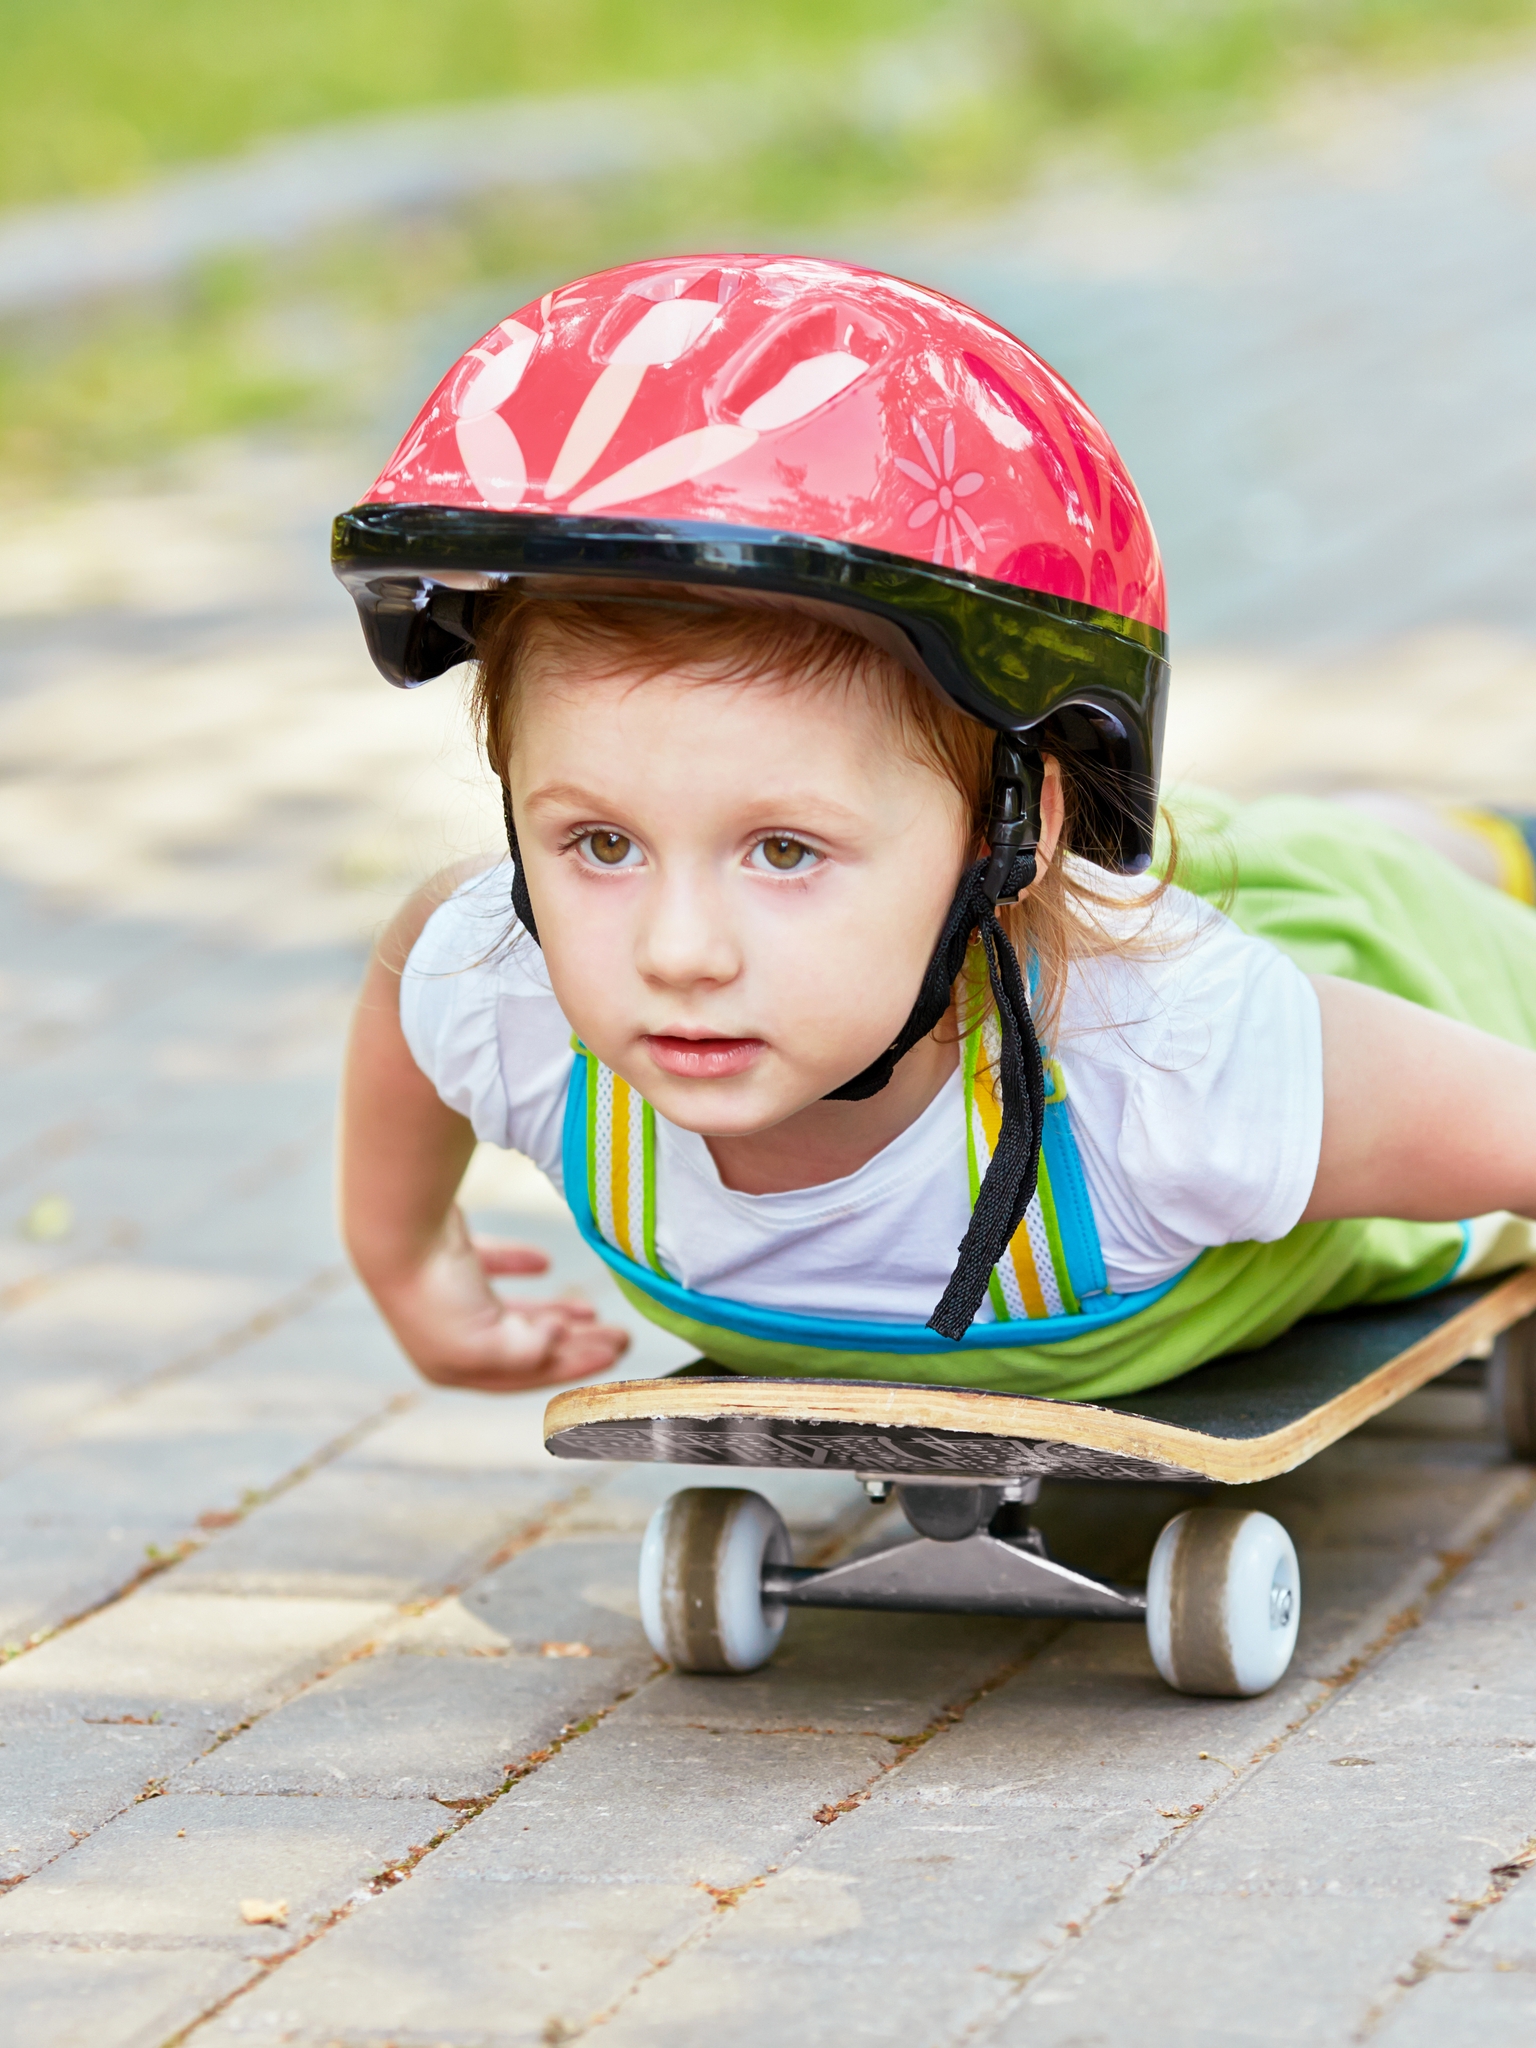 Картинка: Мальчик, ребёнок, катается, скейт, шлем, лёжа